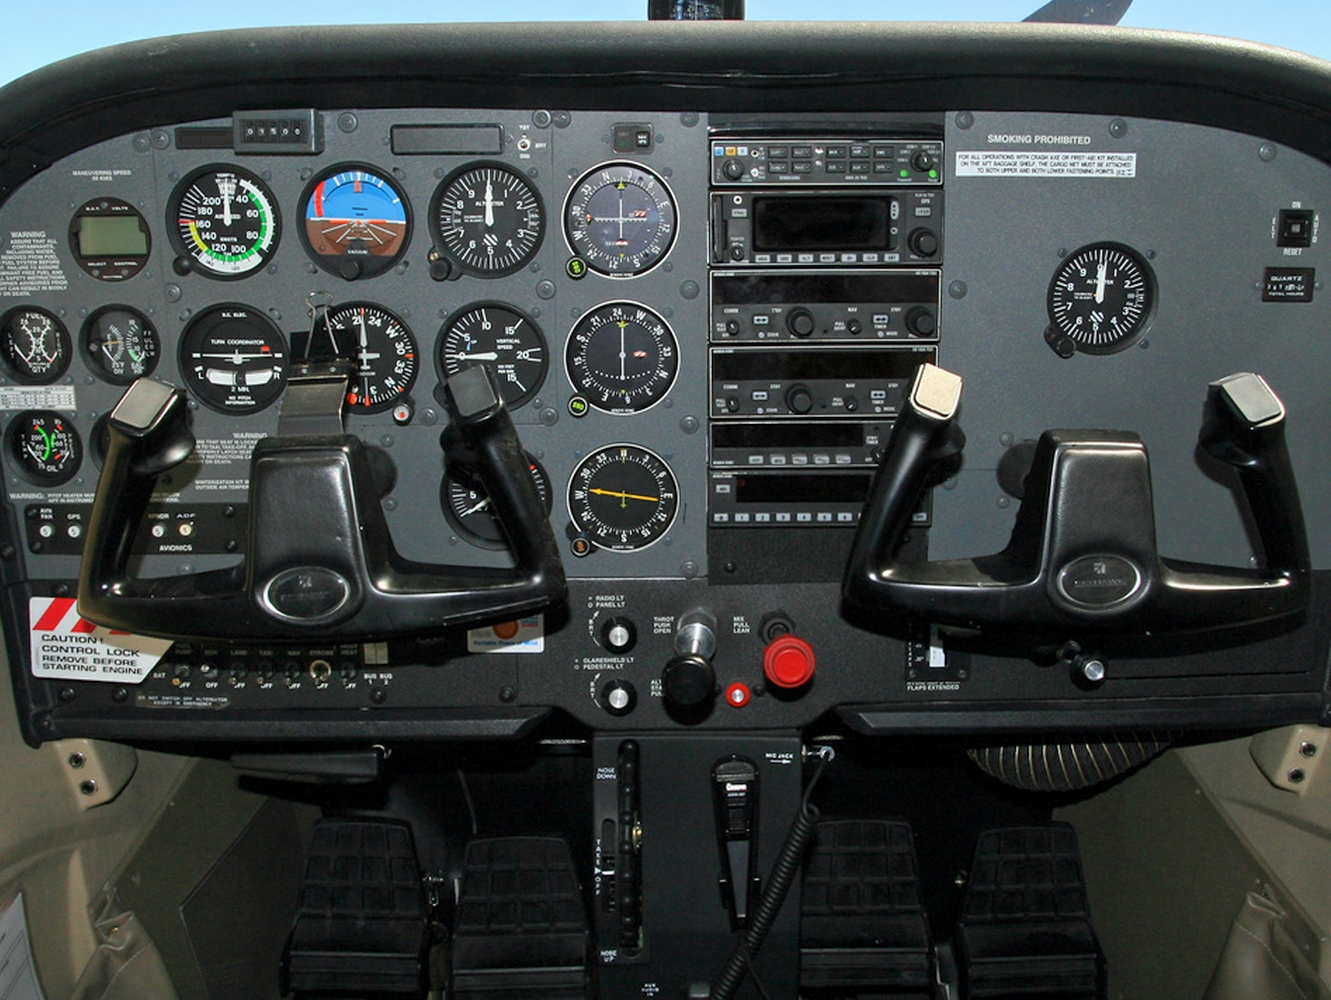 Cessna F172N F-GYFP